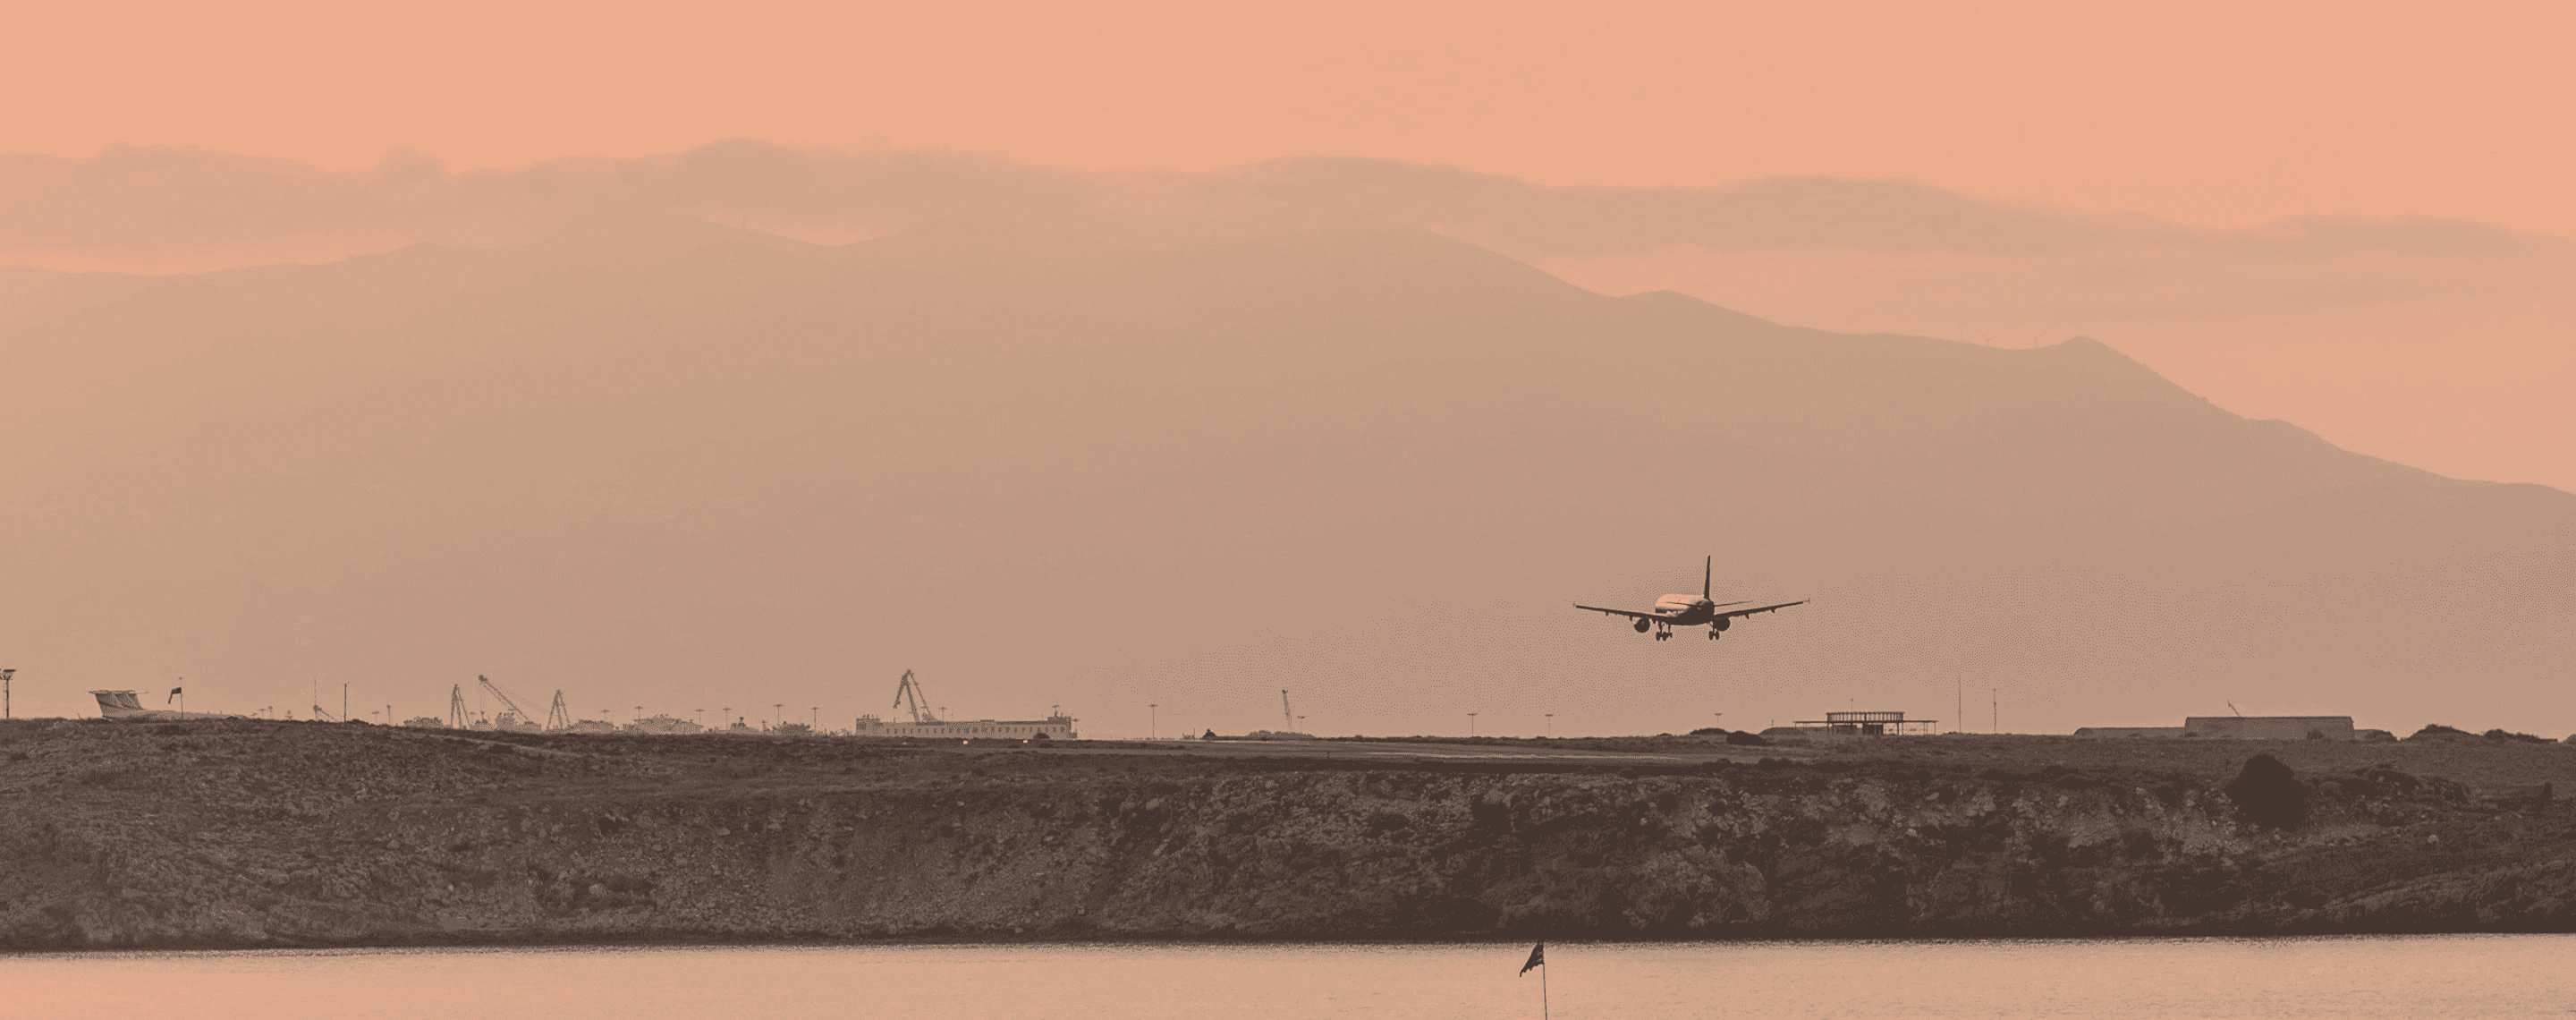 Flugzeug landet am Flughafen Heraklion auf Kreta